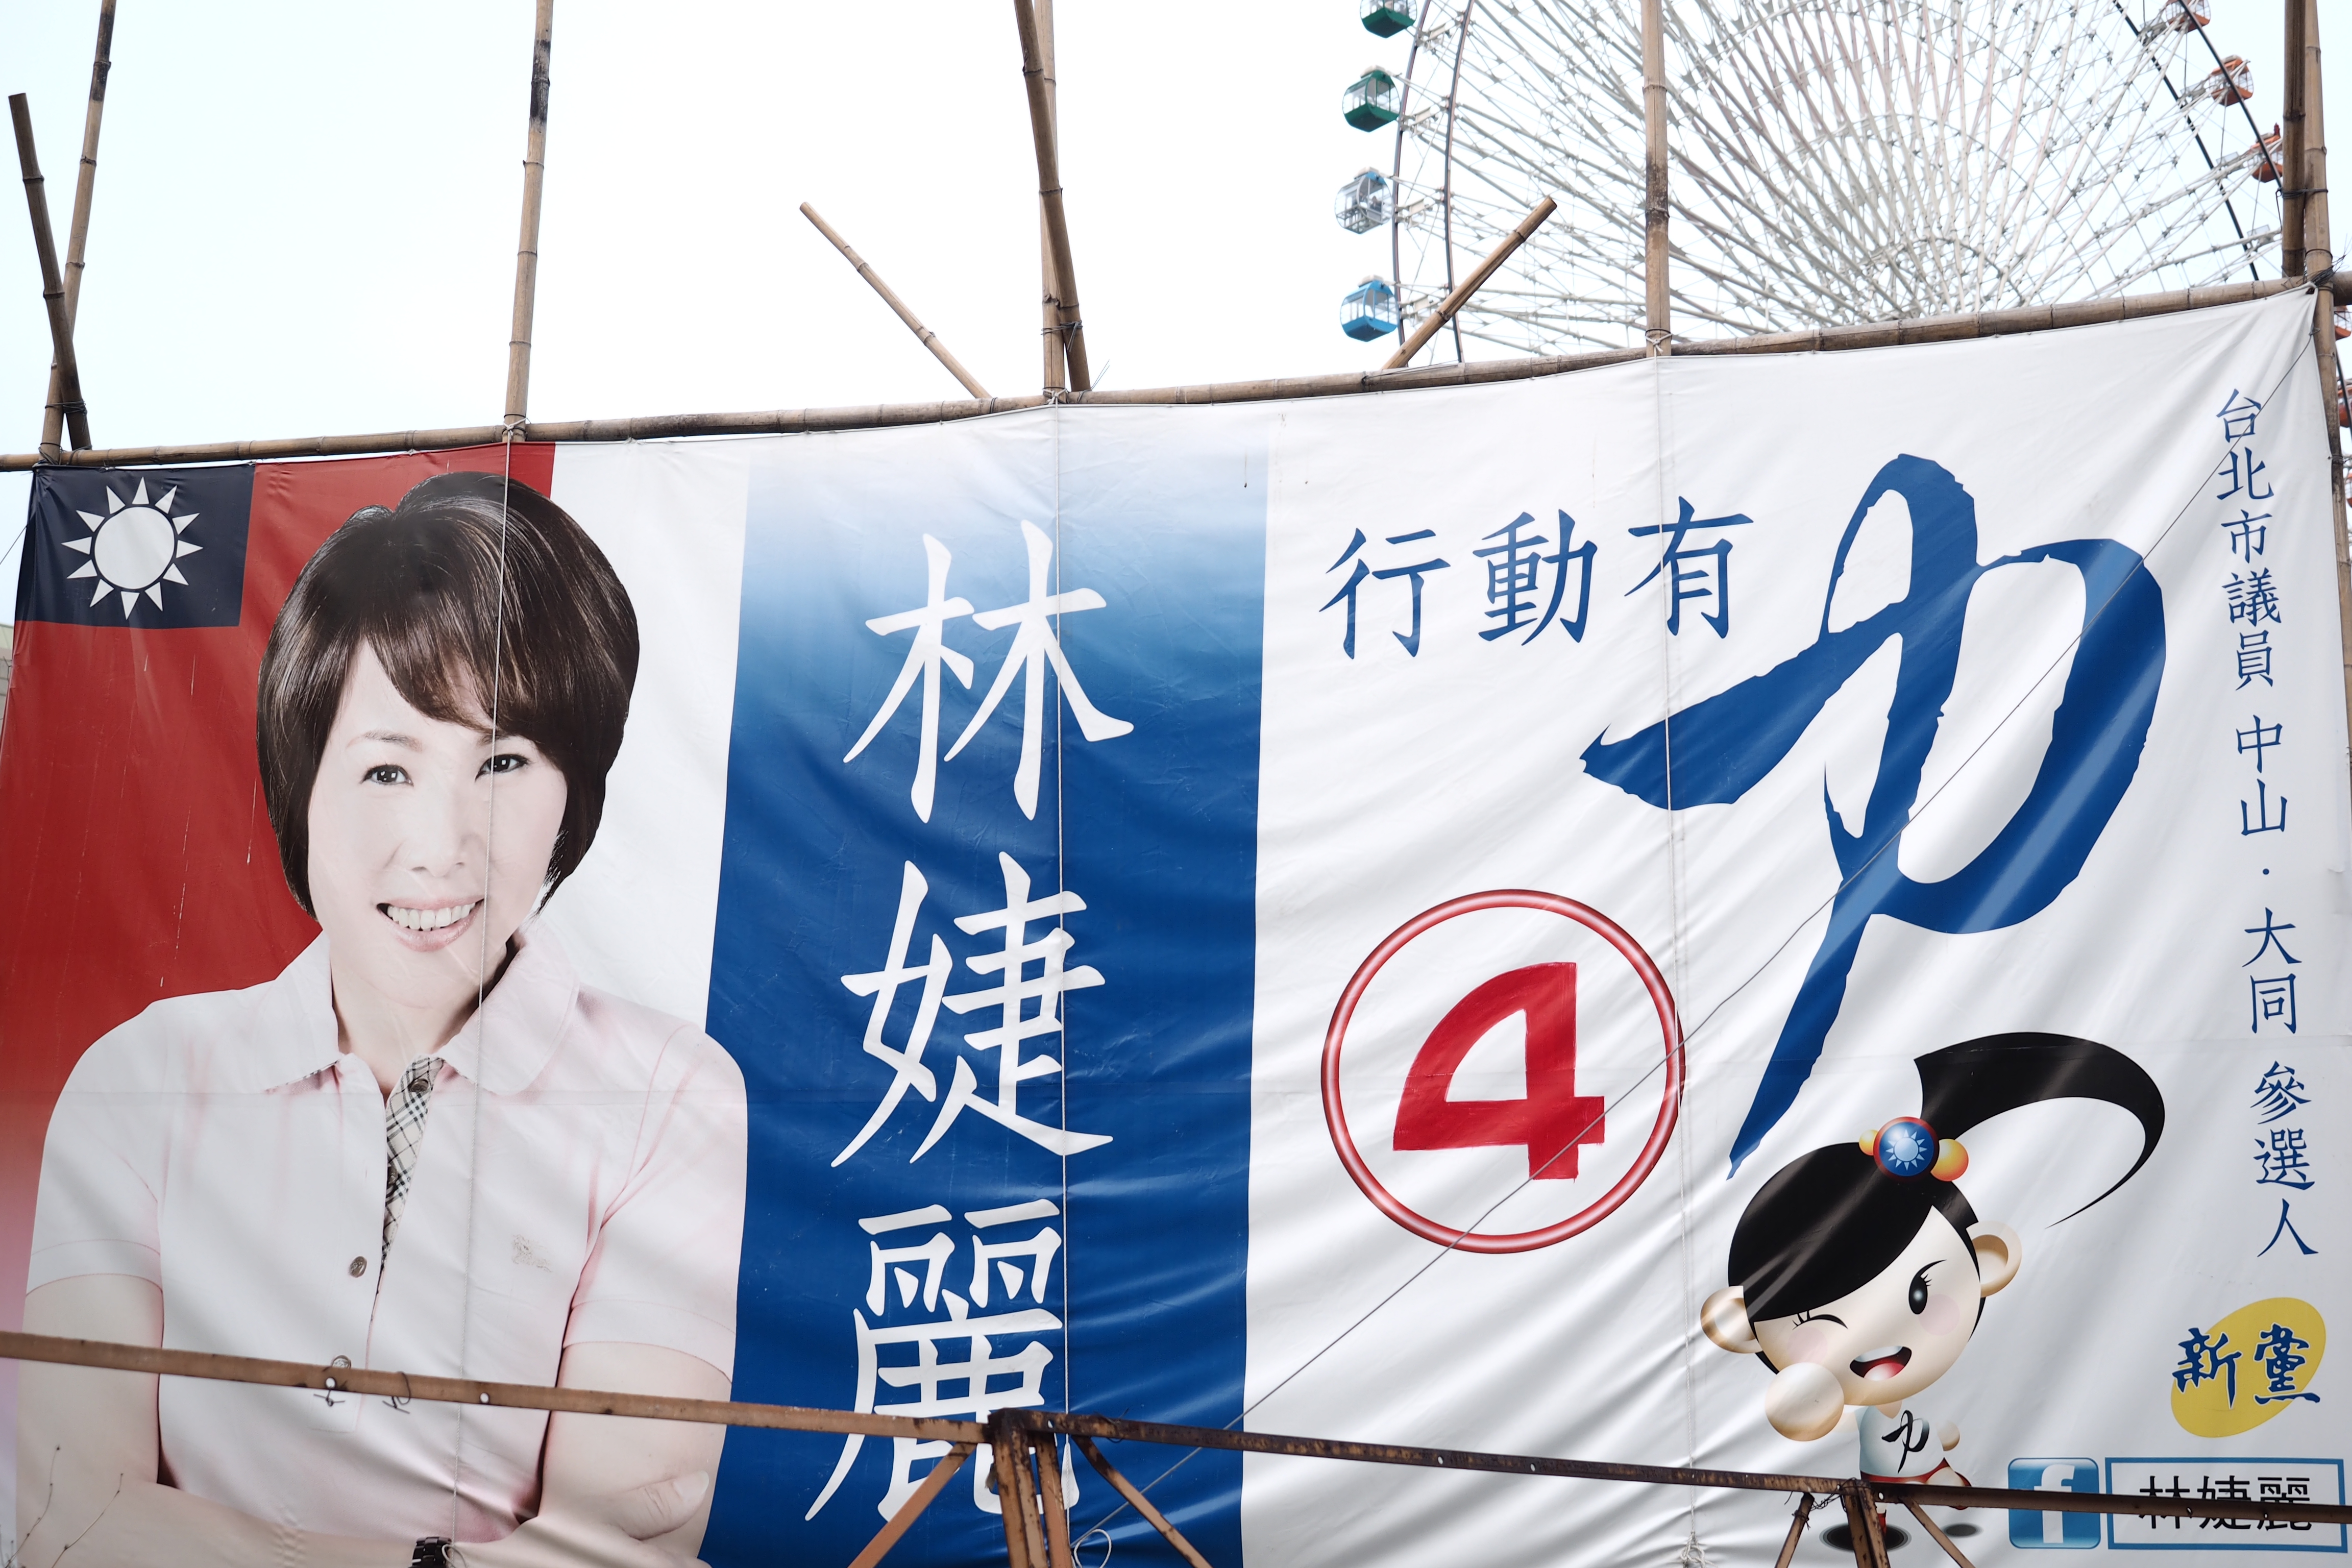 Crédit Zoé Piazza. Affiche d'une candidate KMT à l'occasion des élections locales (novembre 2014)